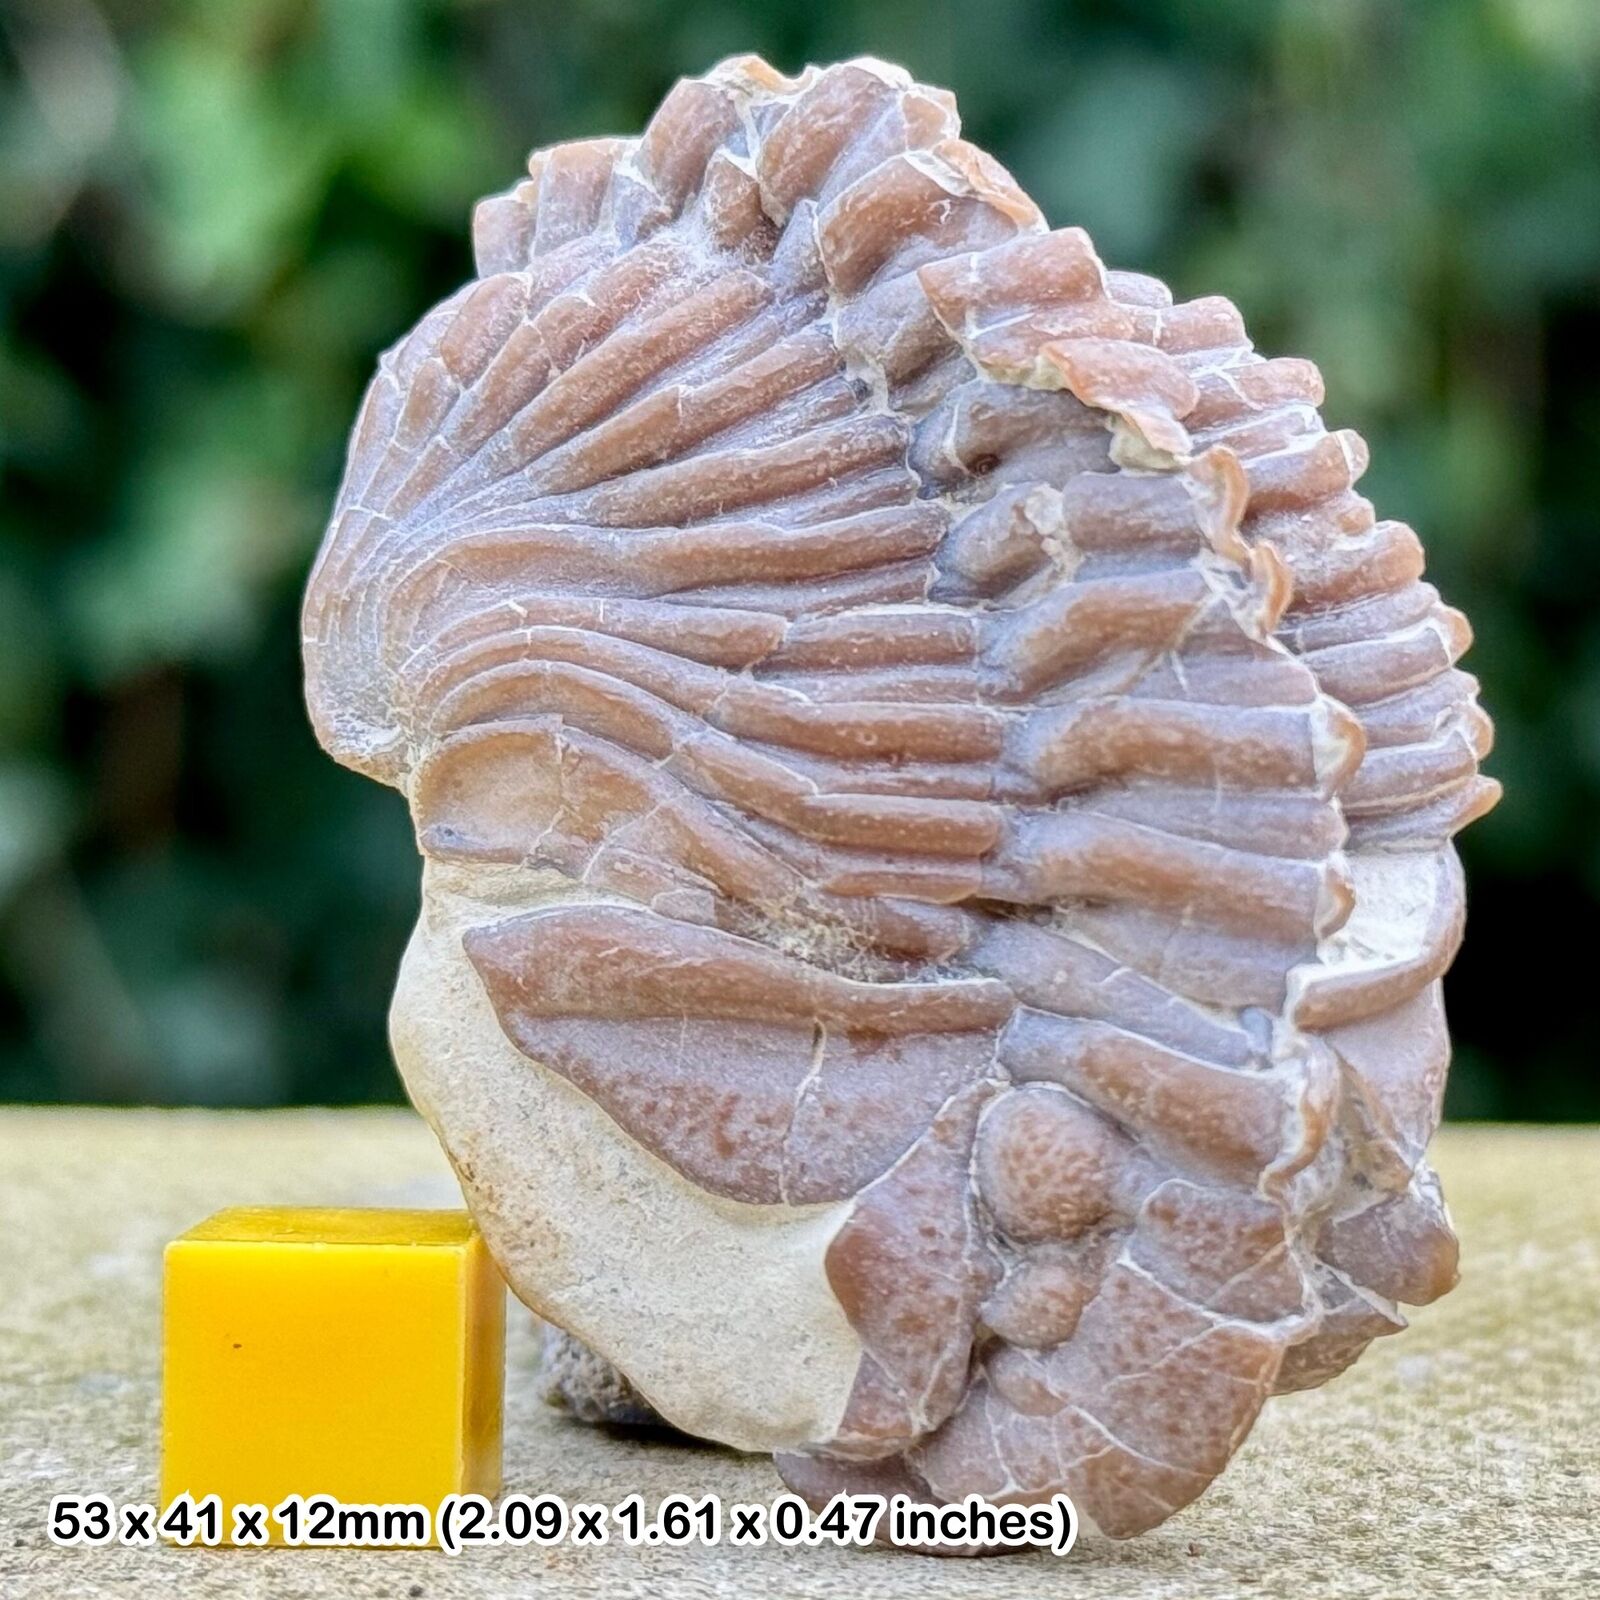 Exquisite Rare Diacalymene Clavicula Trilobite Fossil - Silurian, Oklahoma, USA